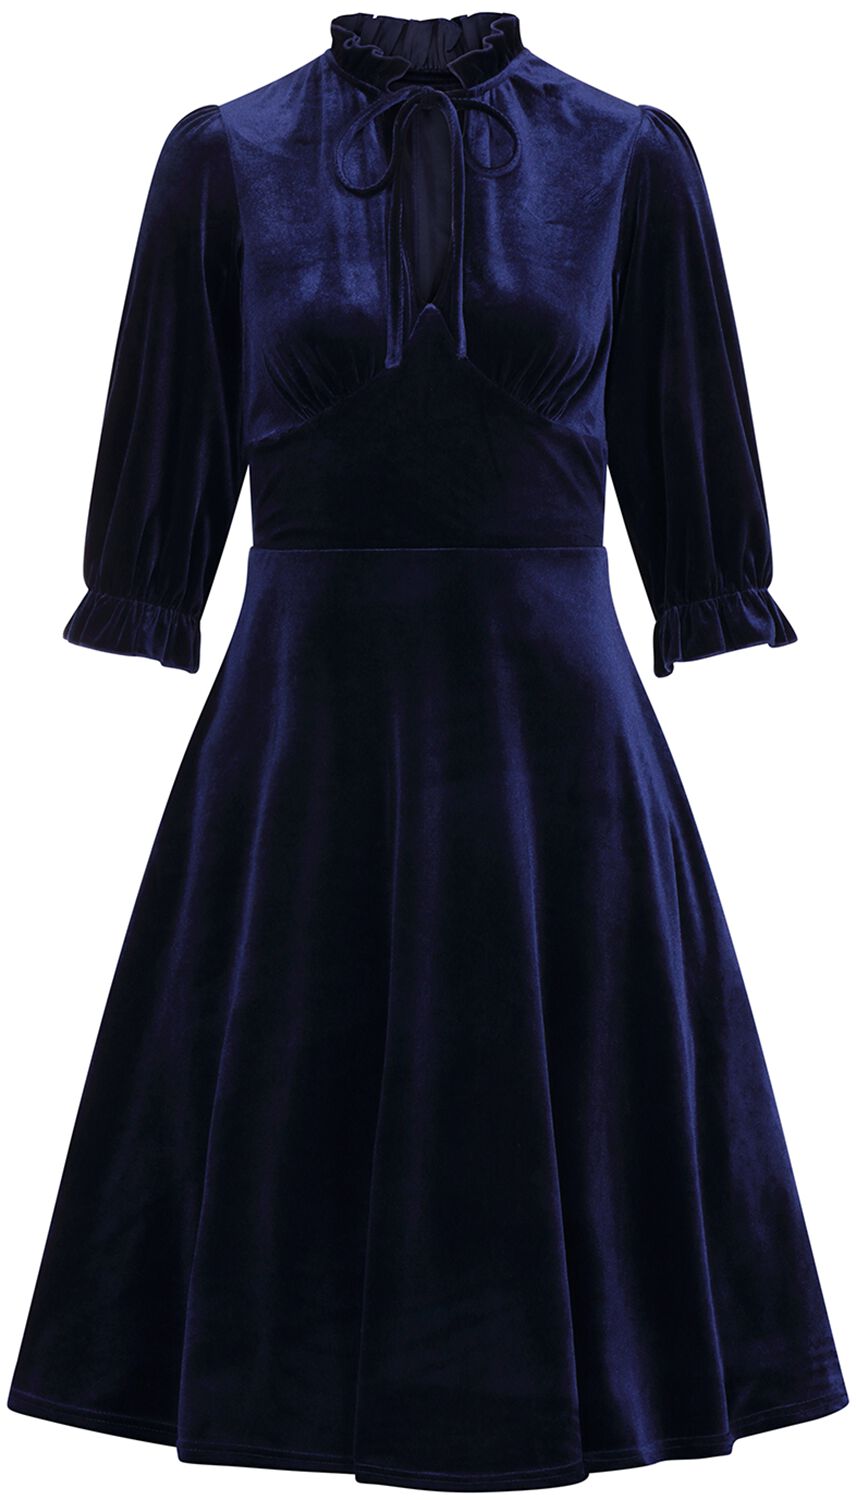 Hell Bunny - Rockabilly Kleid knielang - Orion Dress - XS bis 4XL - für Damen - Größe L - blau von hell bunny